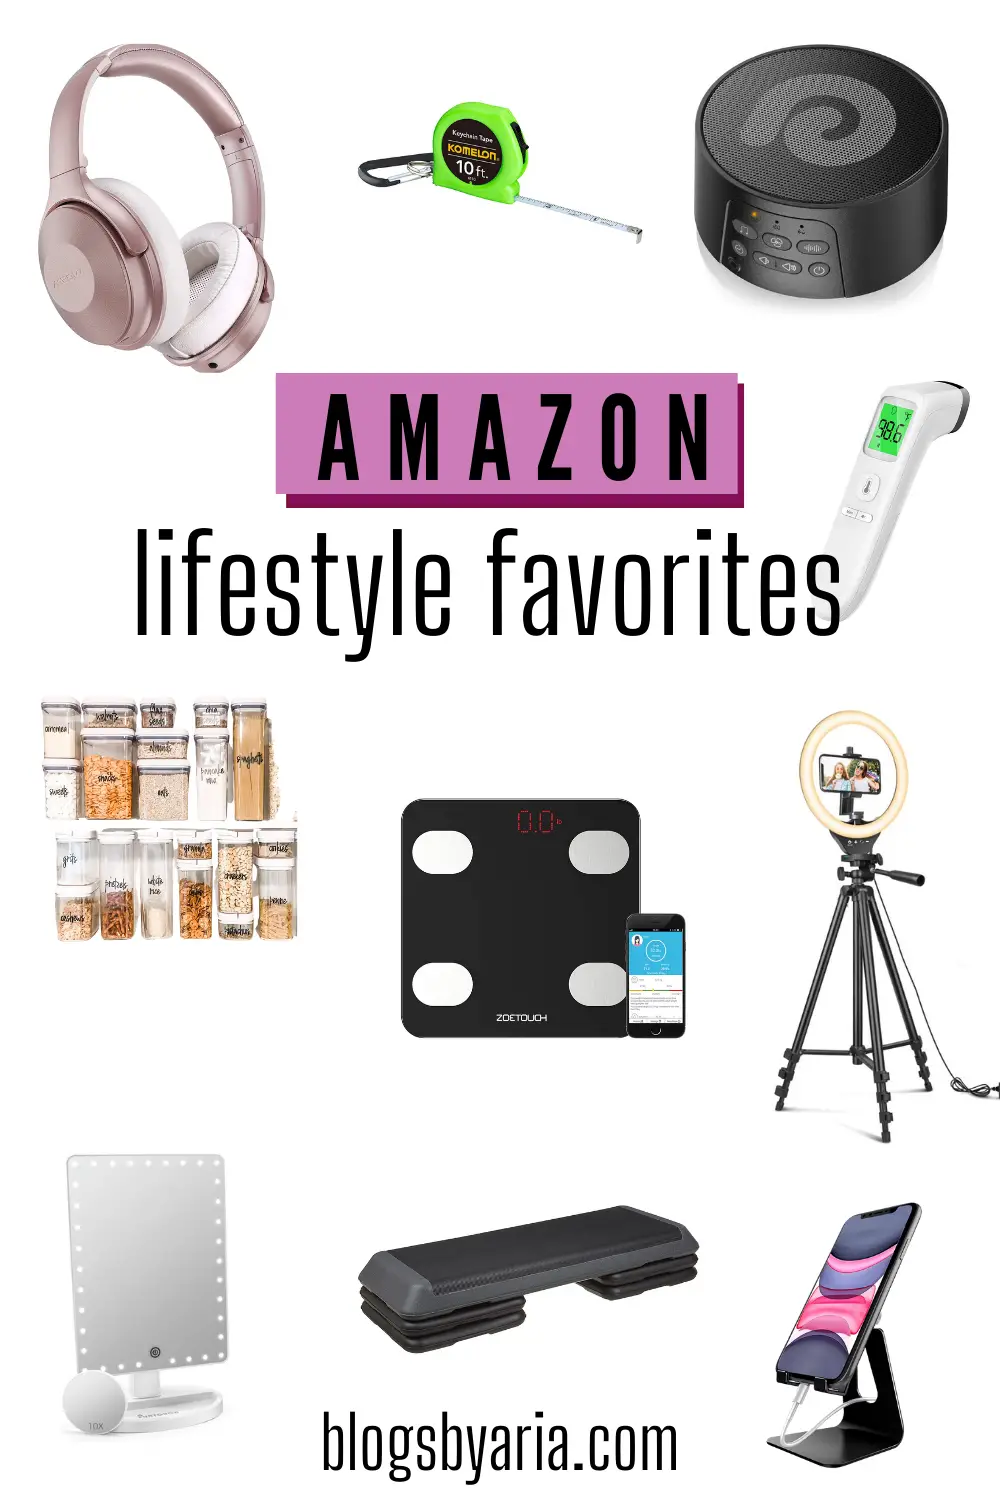 Amazon Lifestyle Favorites